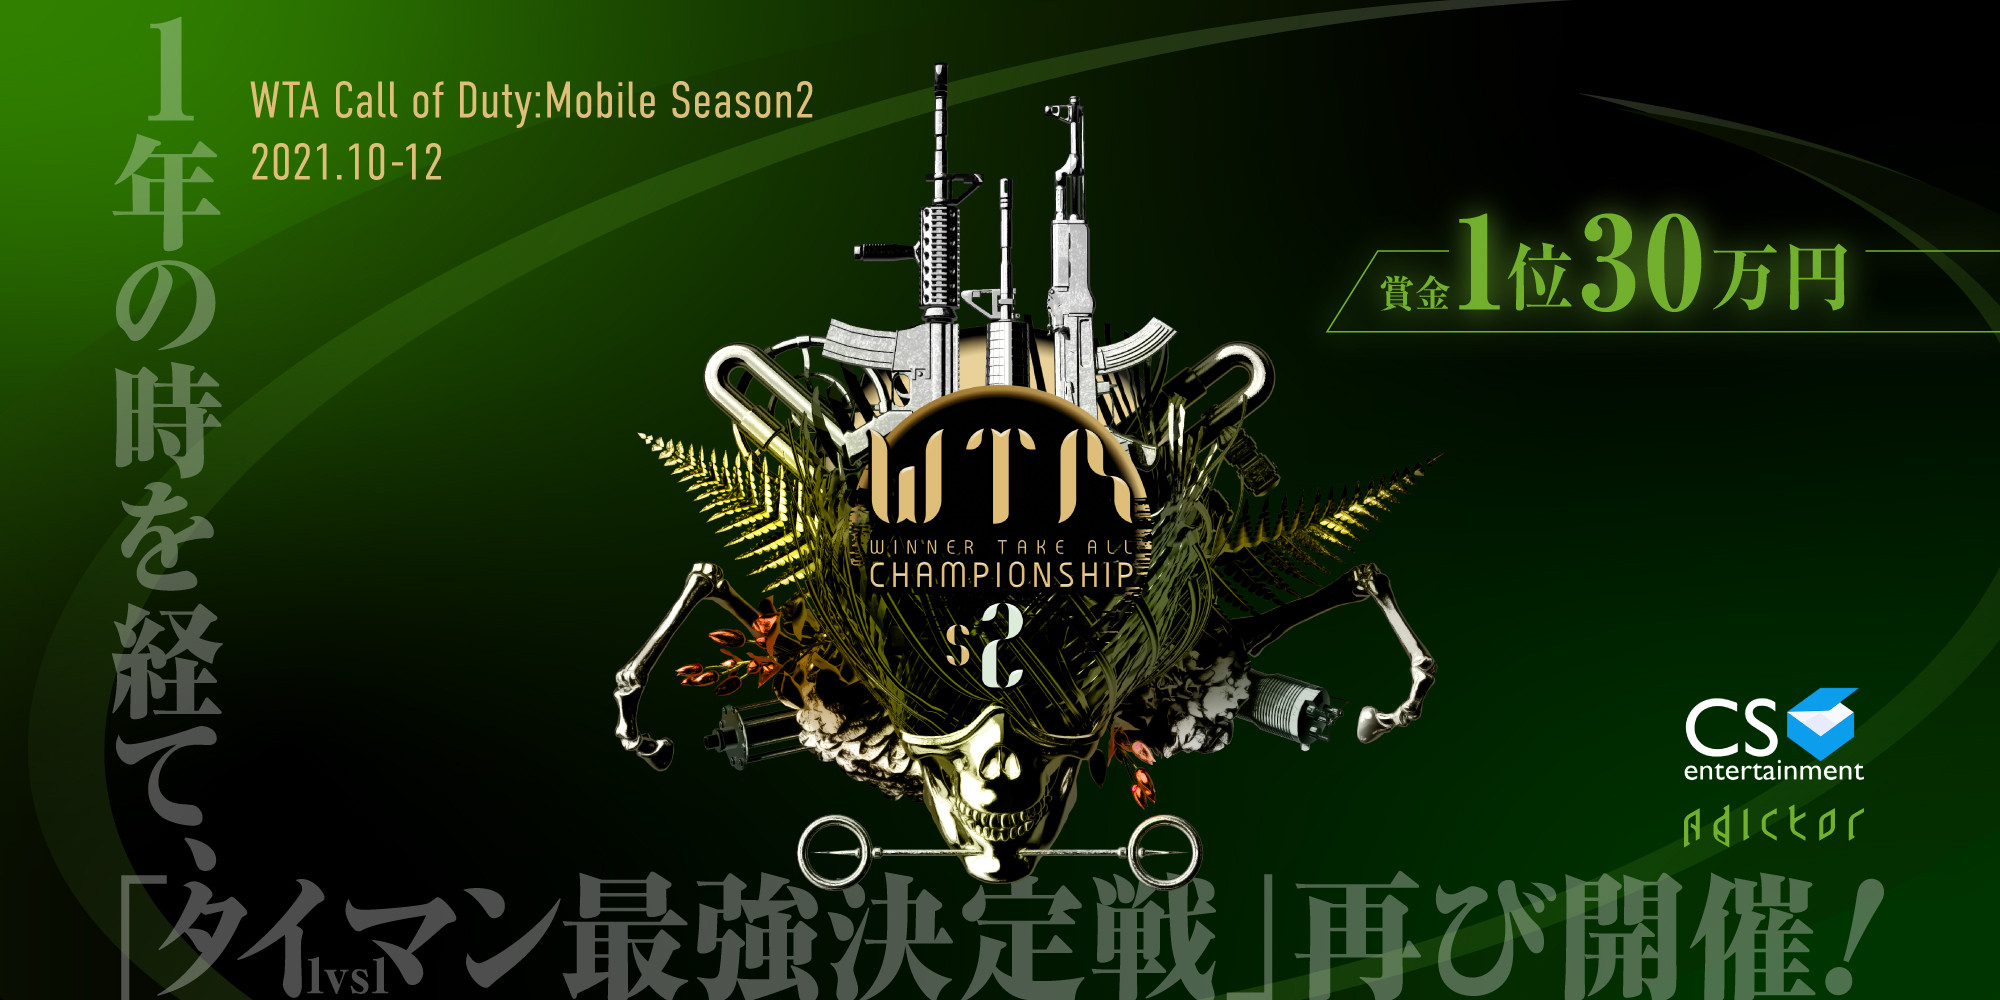 【大会情報】WTA Call of Duty: Mobile Season 2 本戦Bグループ予選【2021年11月21日】